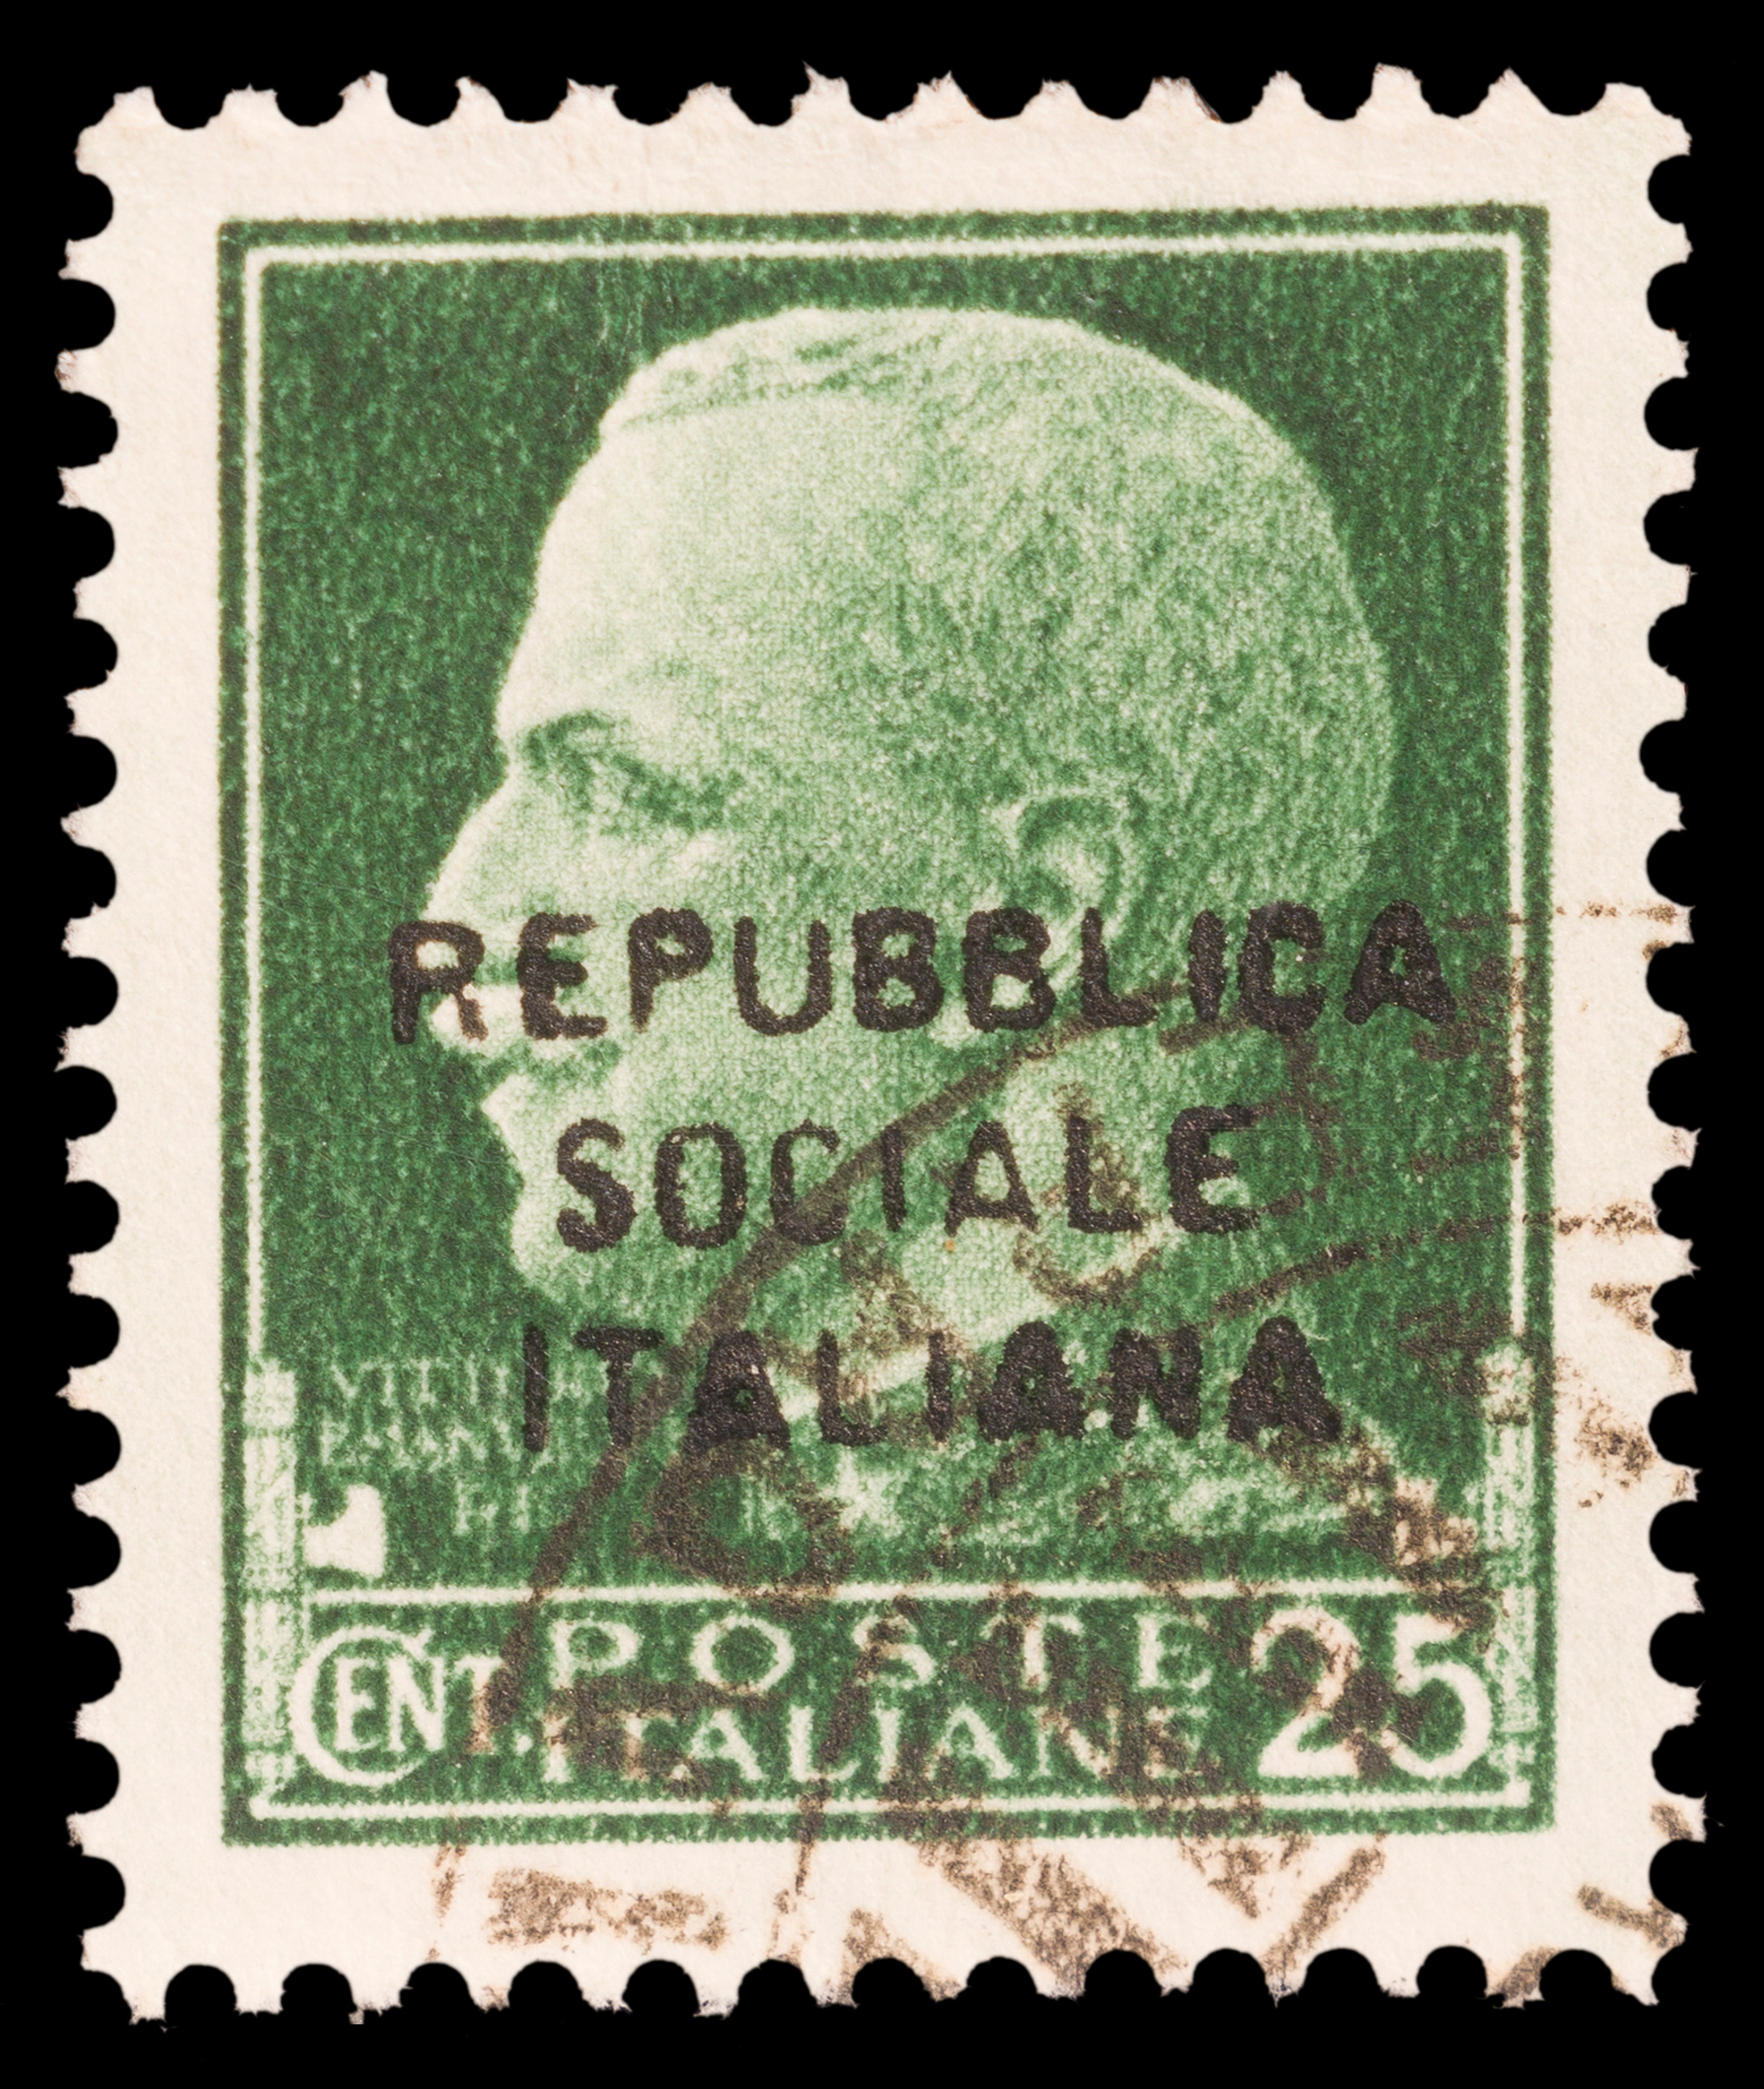 1944, REPUBBLICA SOCIALE ITALIANA - Image 5 of 6